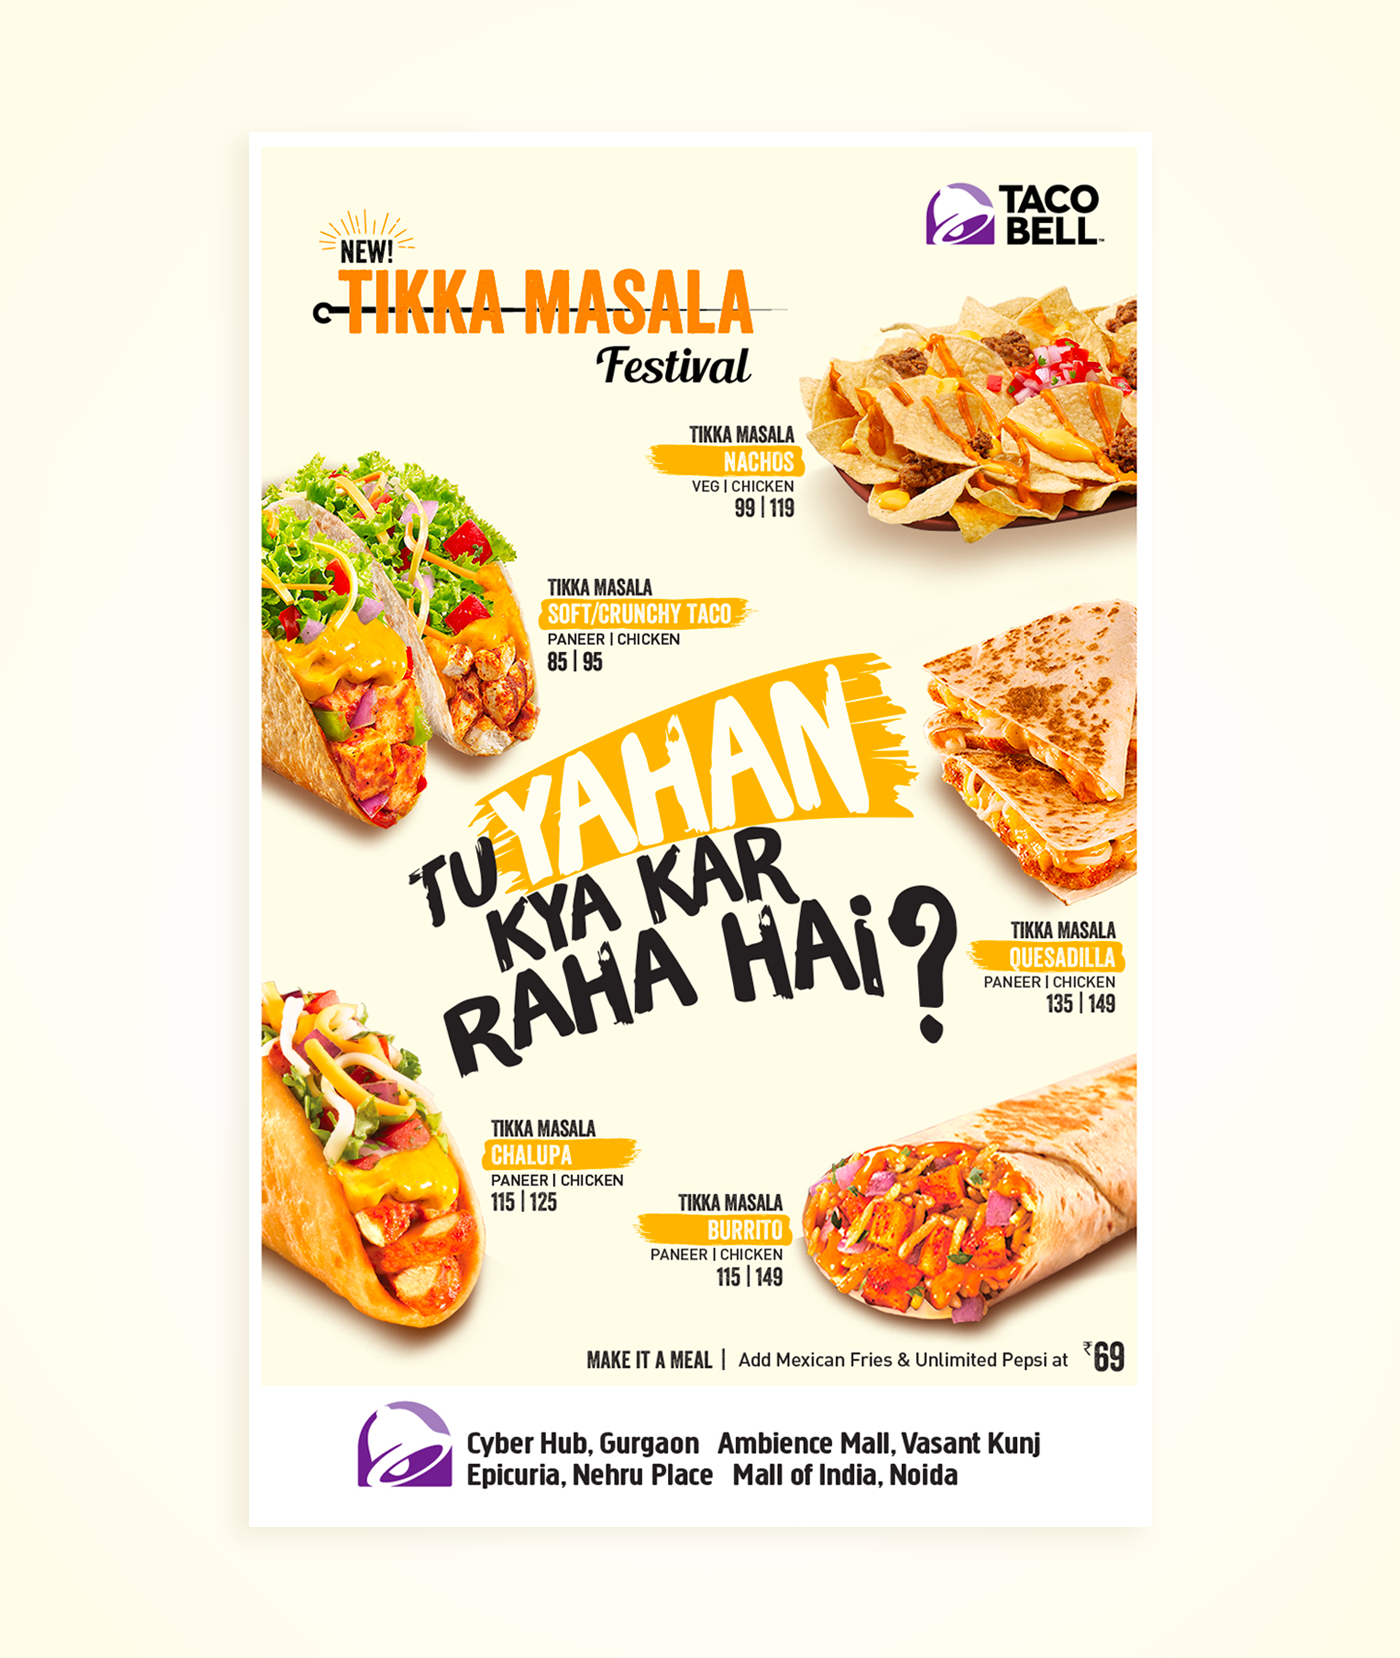 Taco Bell tikka masala indian food maxican food Tacos leaaflet print ad branding  gurgaon Delhi